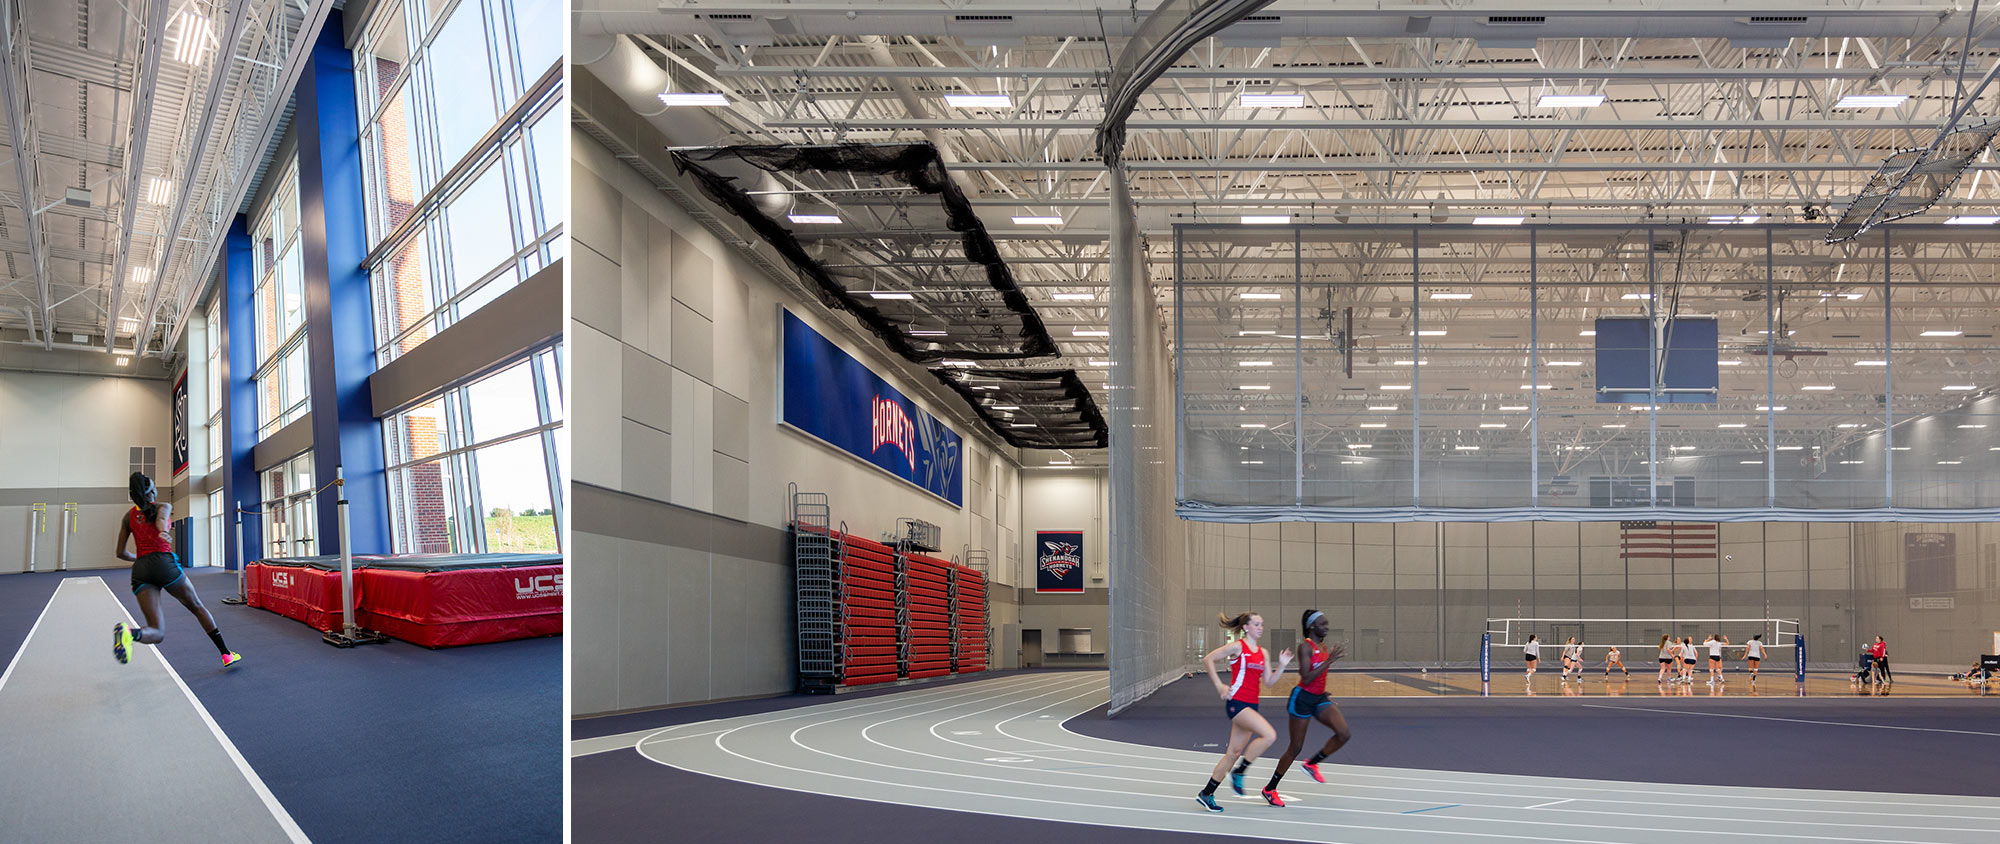 Shenandoah University, James R. Wilkins, Jr. Athletics and Events Center